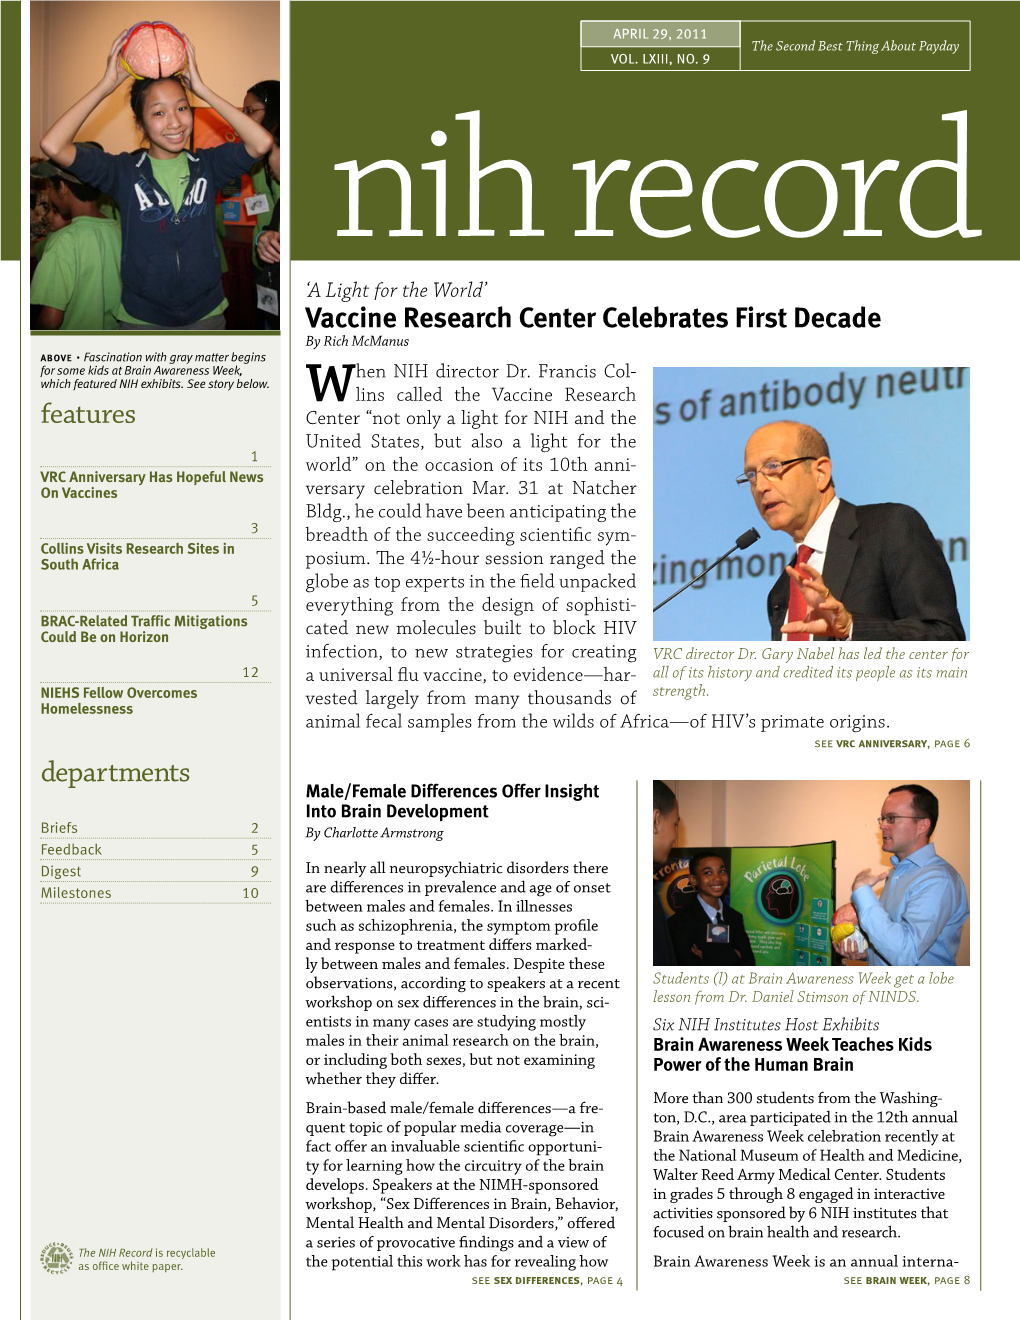 April 29, 2011, NIH Record, Vol. LXIII, No. 9